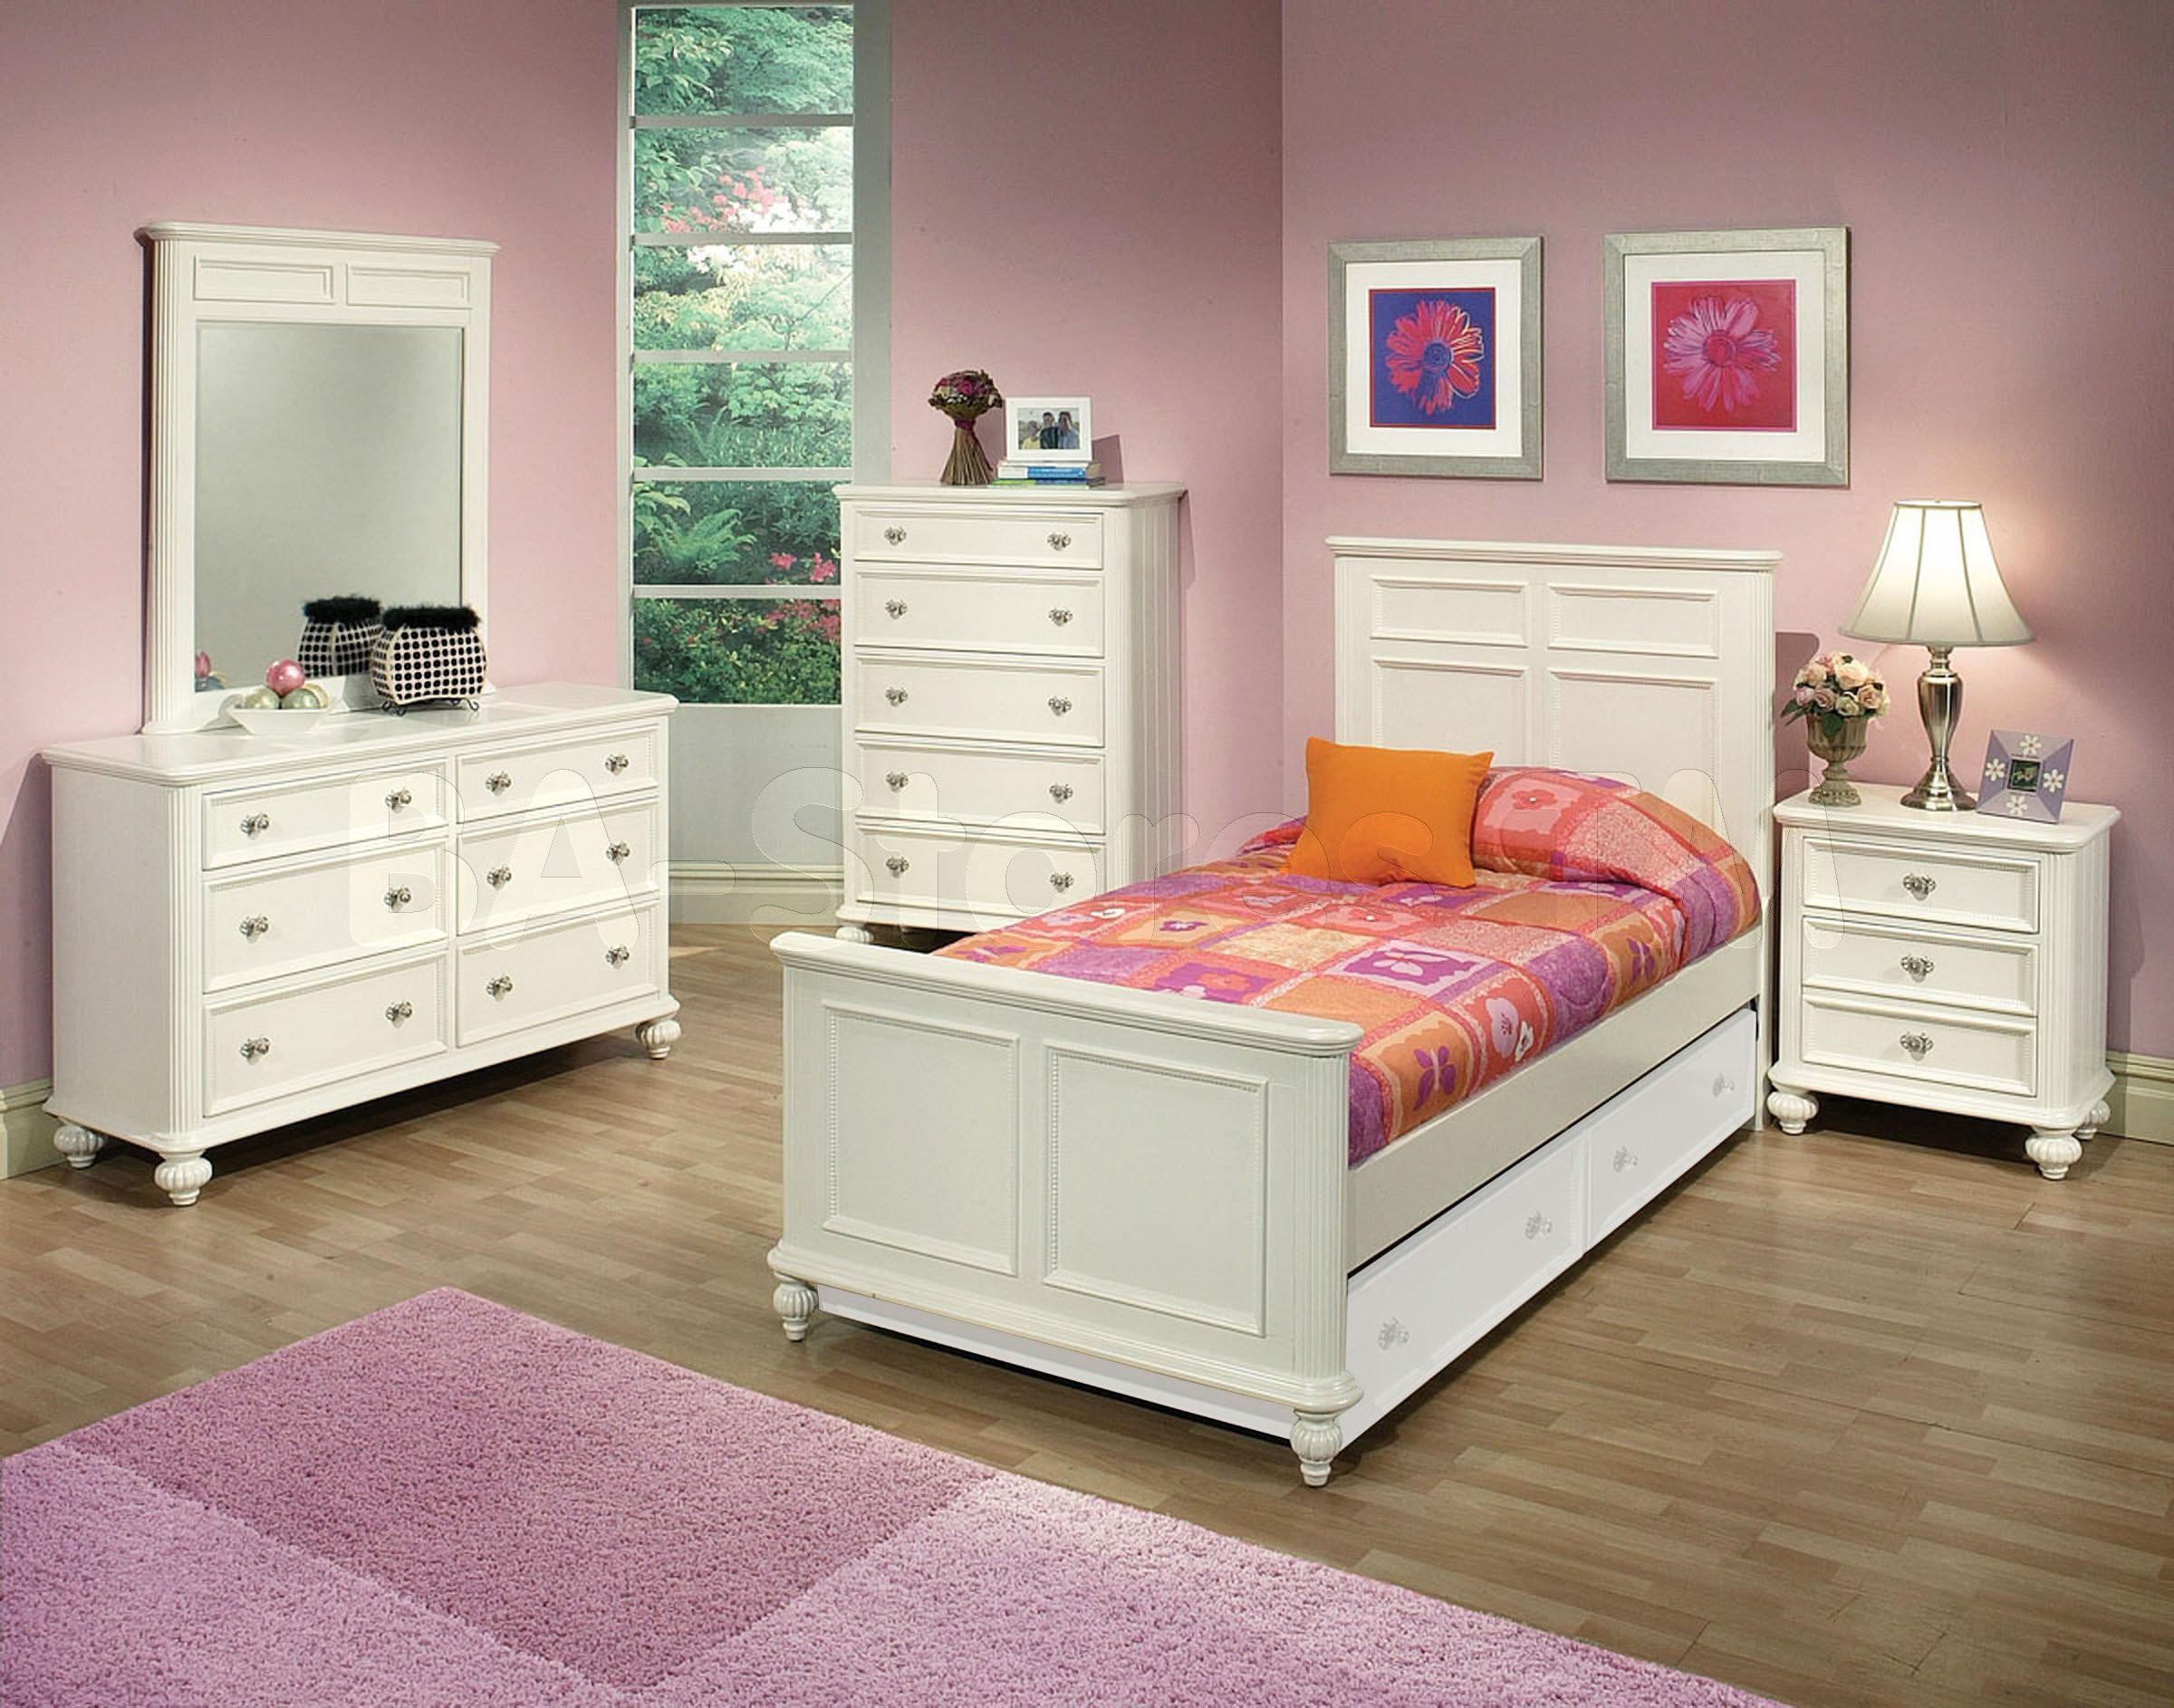 Boy Bedroom Furniture
 Solid wood bedroom furniture for kids 20 tips for best